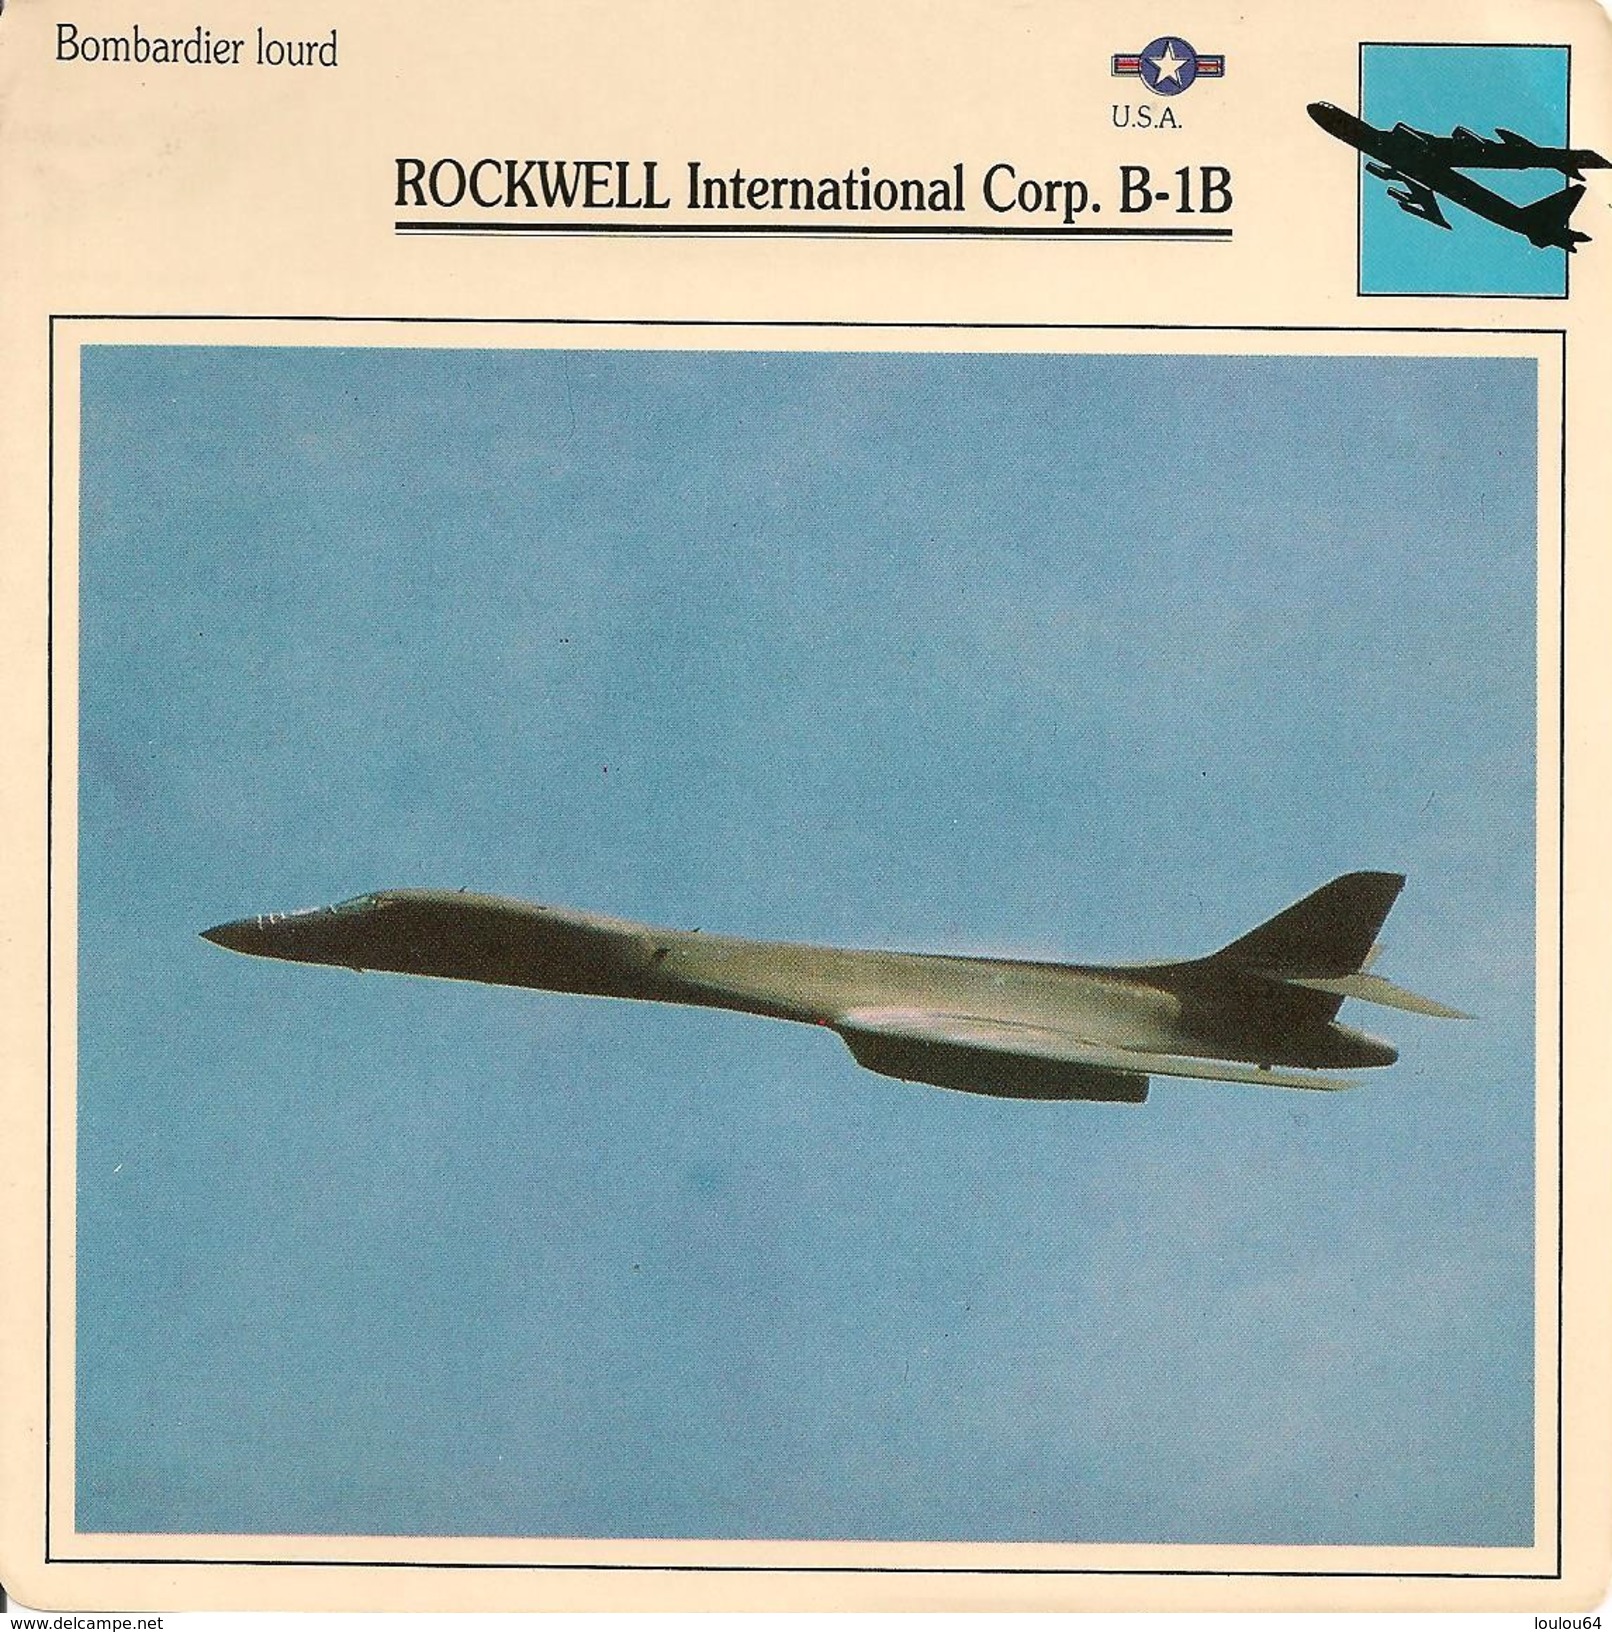 Fiches Illustrées - Caractéristiques Avions - Bombardier Lourd - ROCKWELL International Corp. B-1B - U.S.A. - (06) - - Aviation